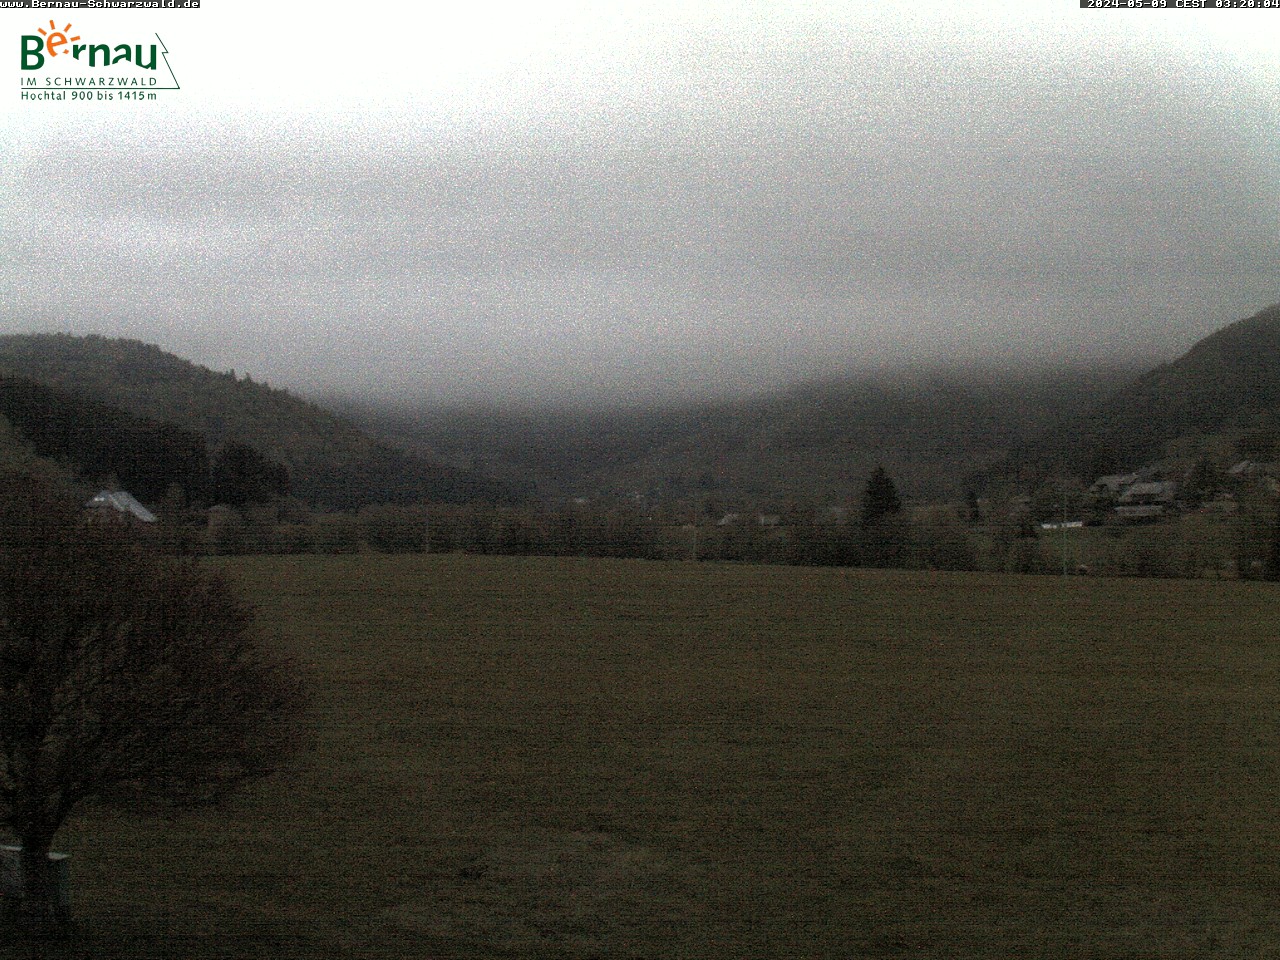 Webcam in Bernau